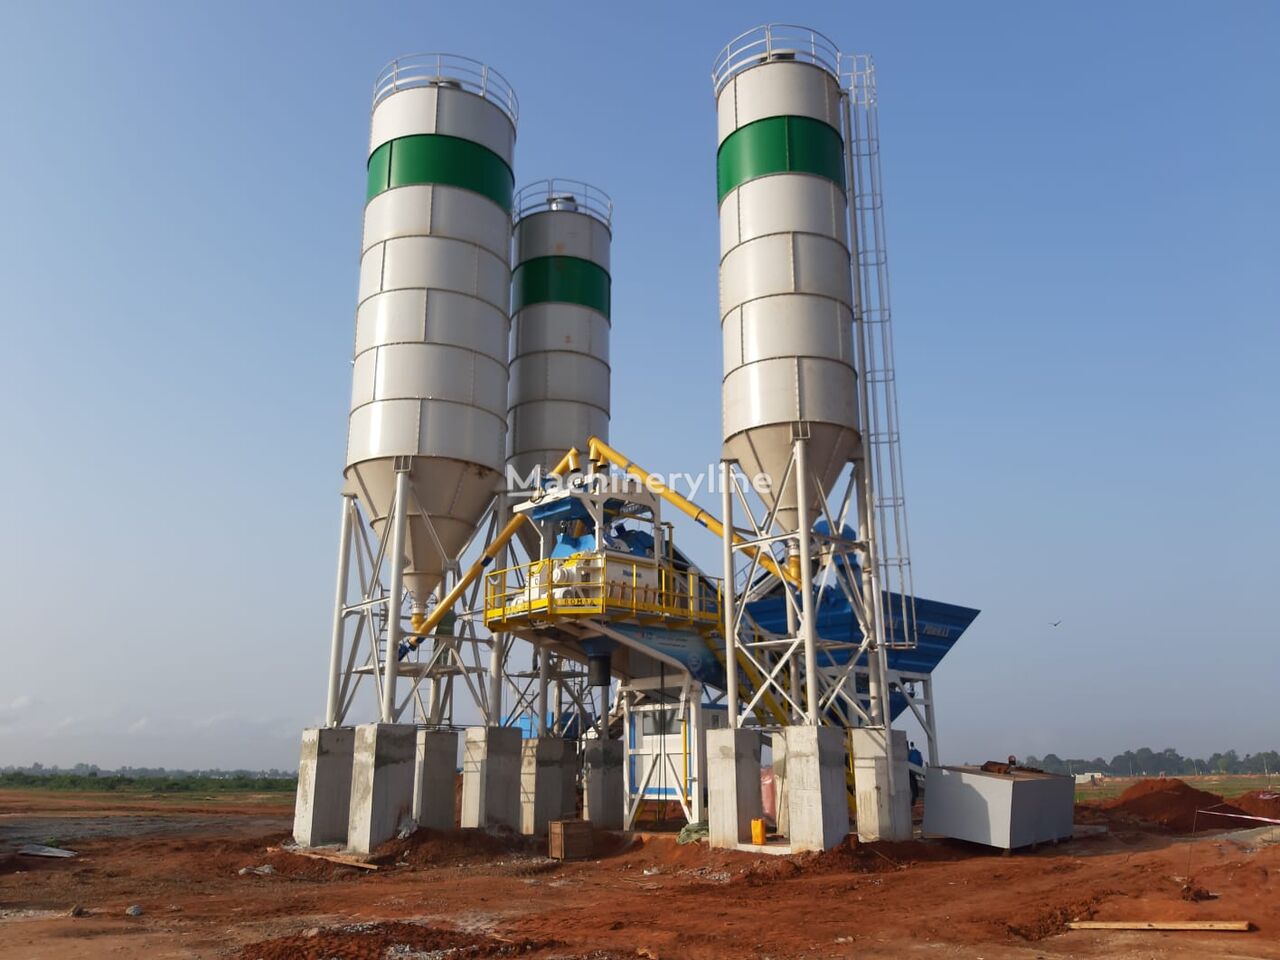 Promax 100 tons cement silo delivery from stock silo de cemento nuevo